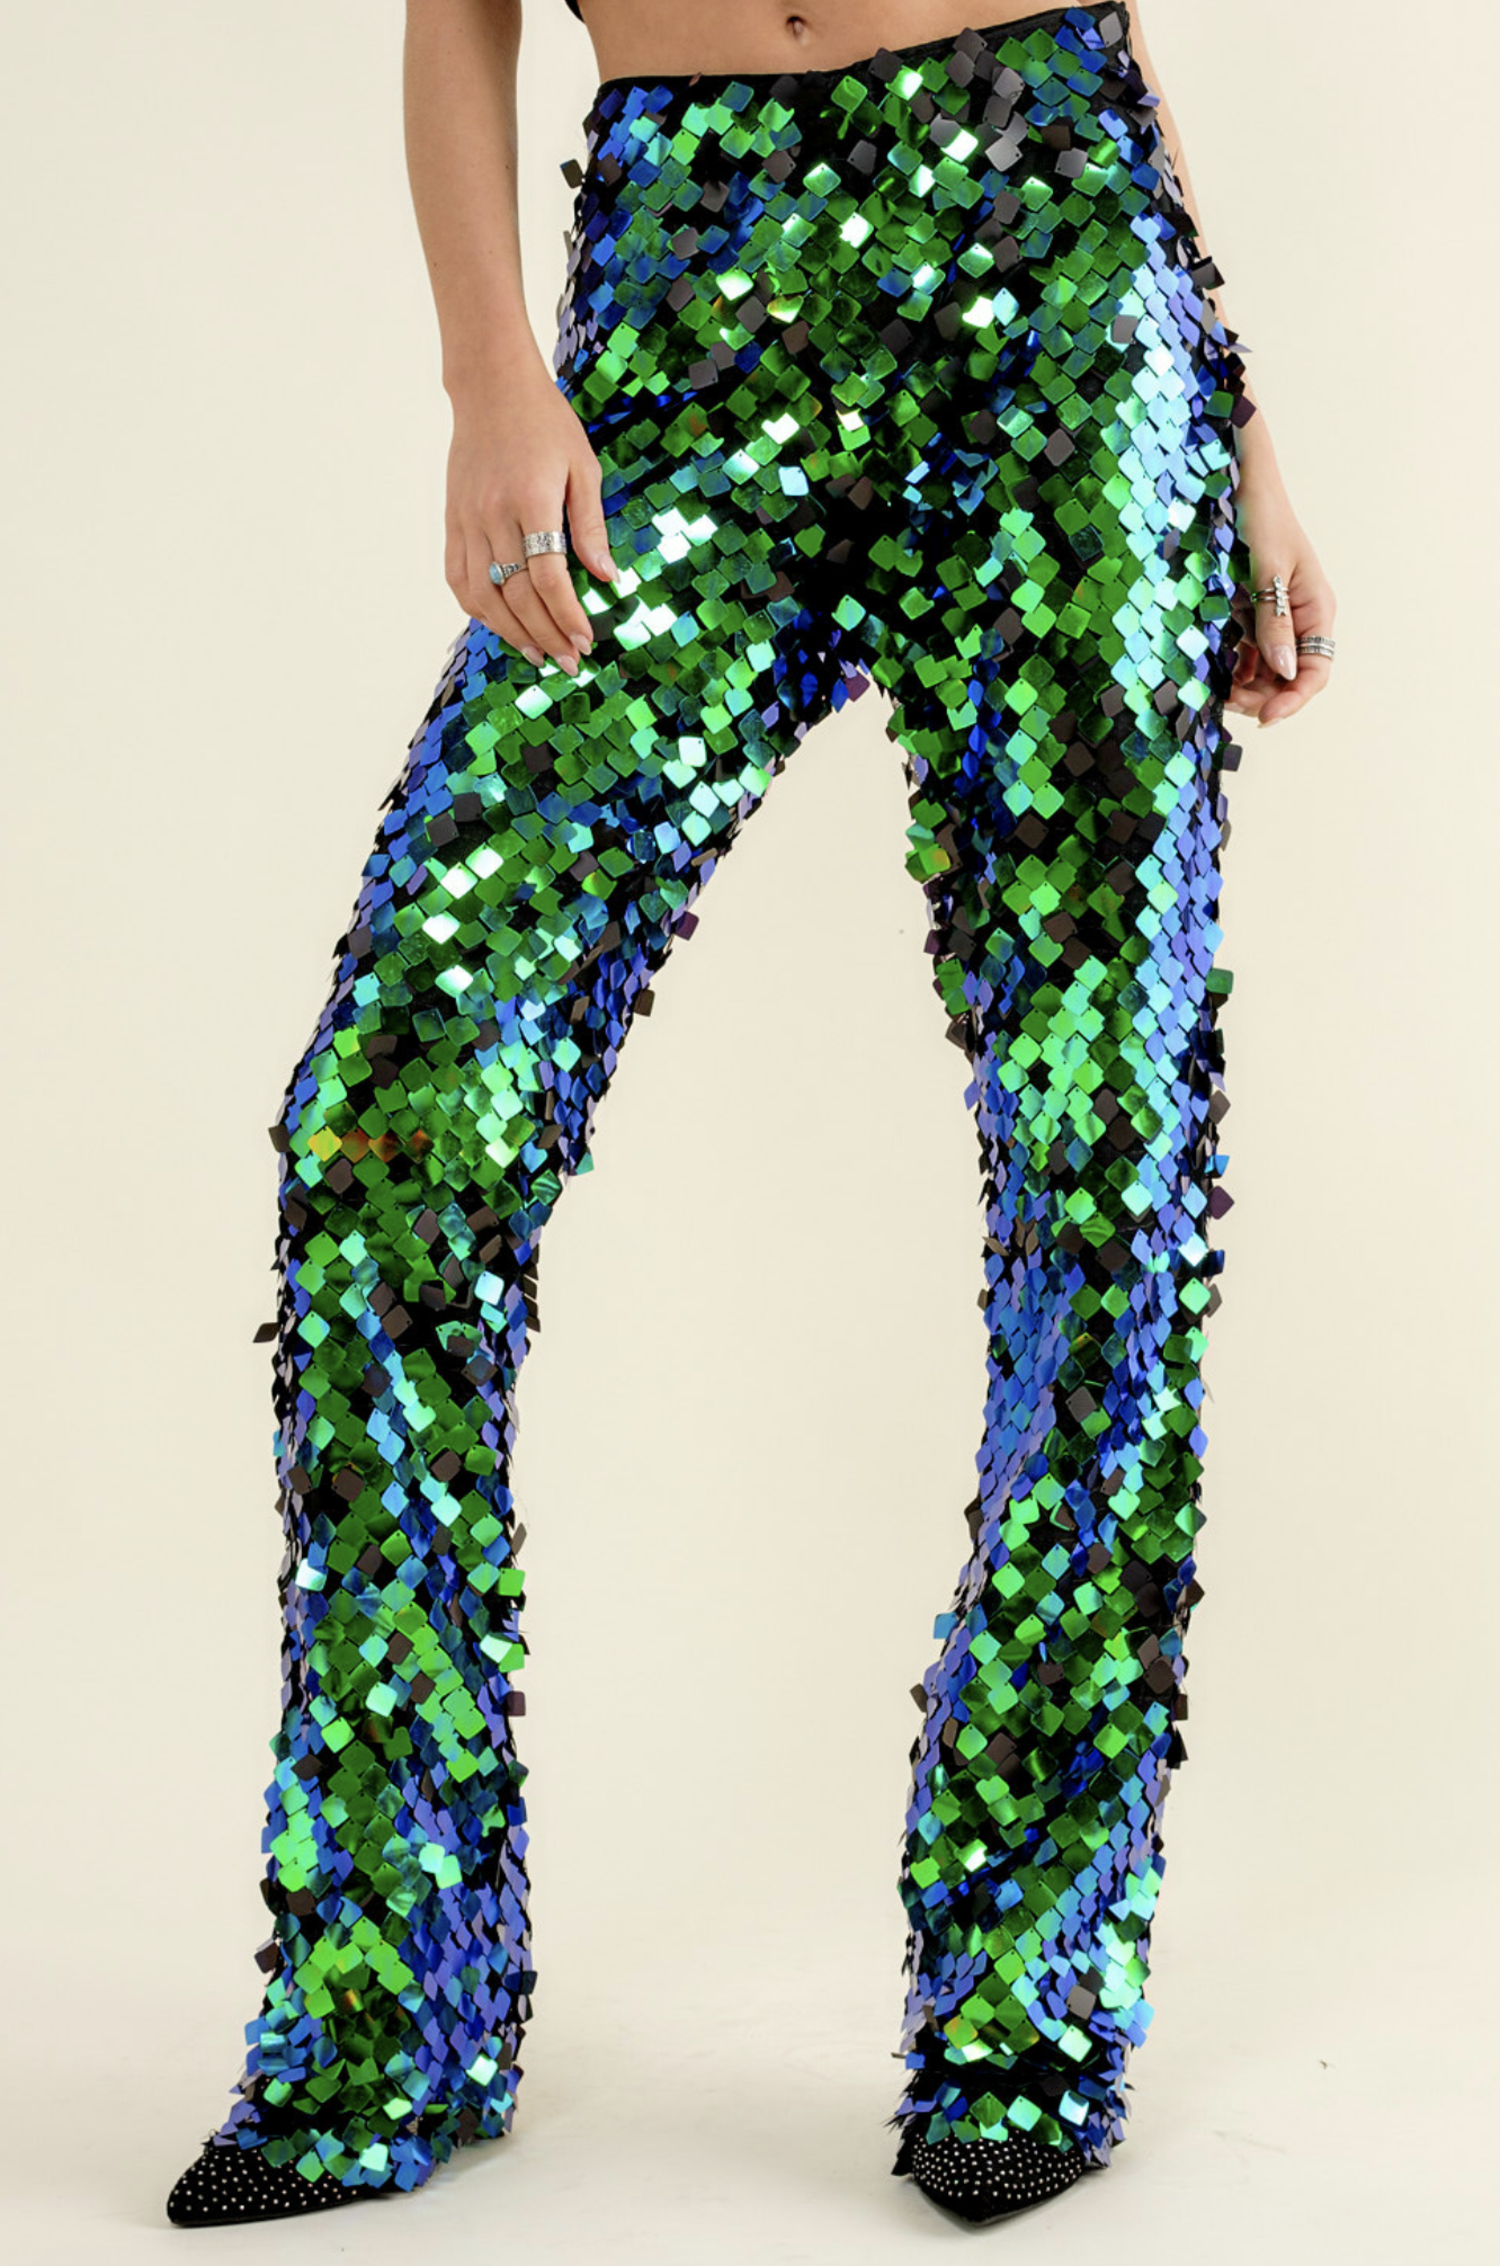 https://cdn.shoplightspeed.com/shops/621347/files/59722542/1500x4000x3/blue-b-iridescent-green-square-disc-sequin-pants.jpg